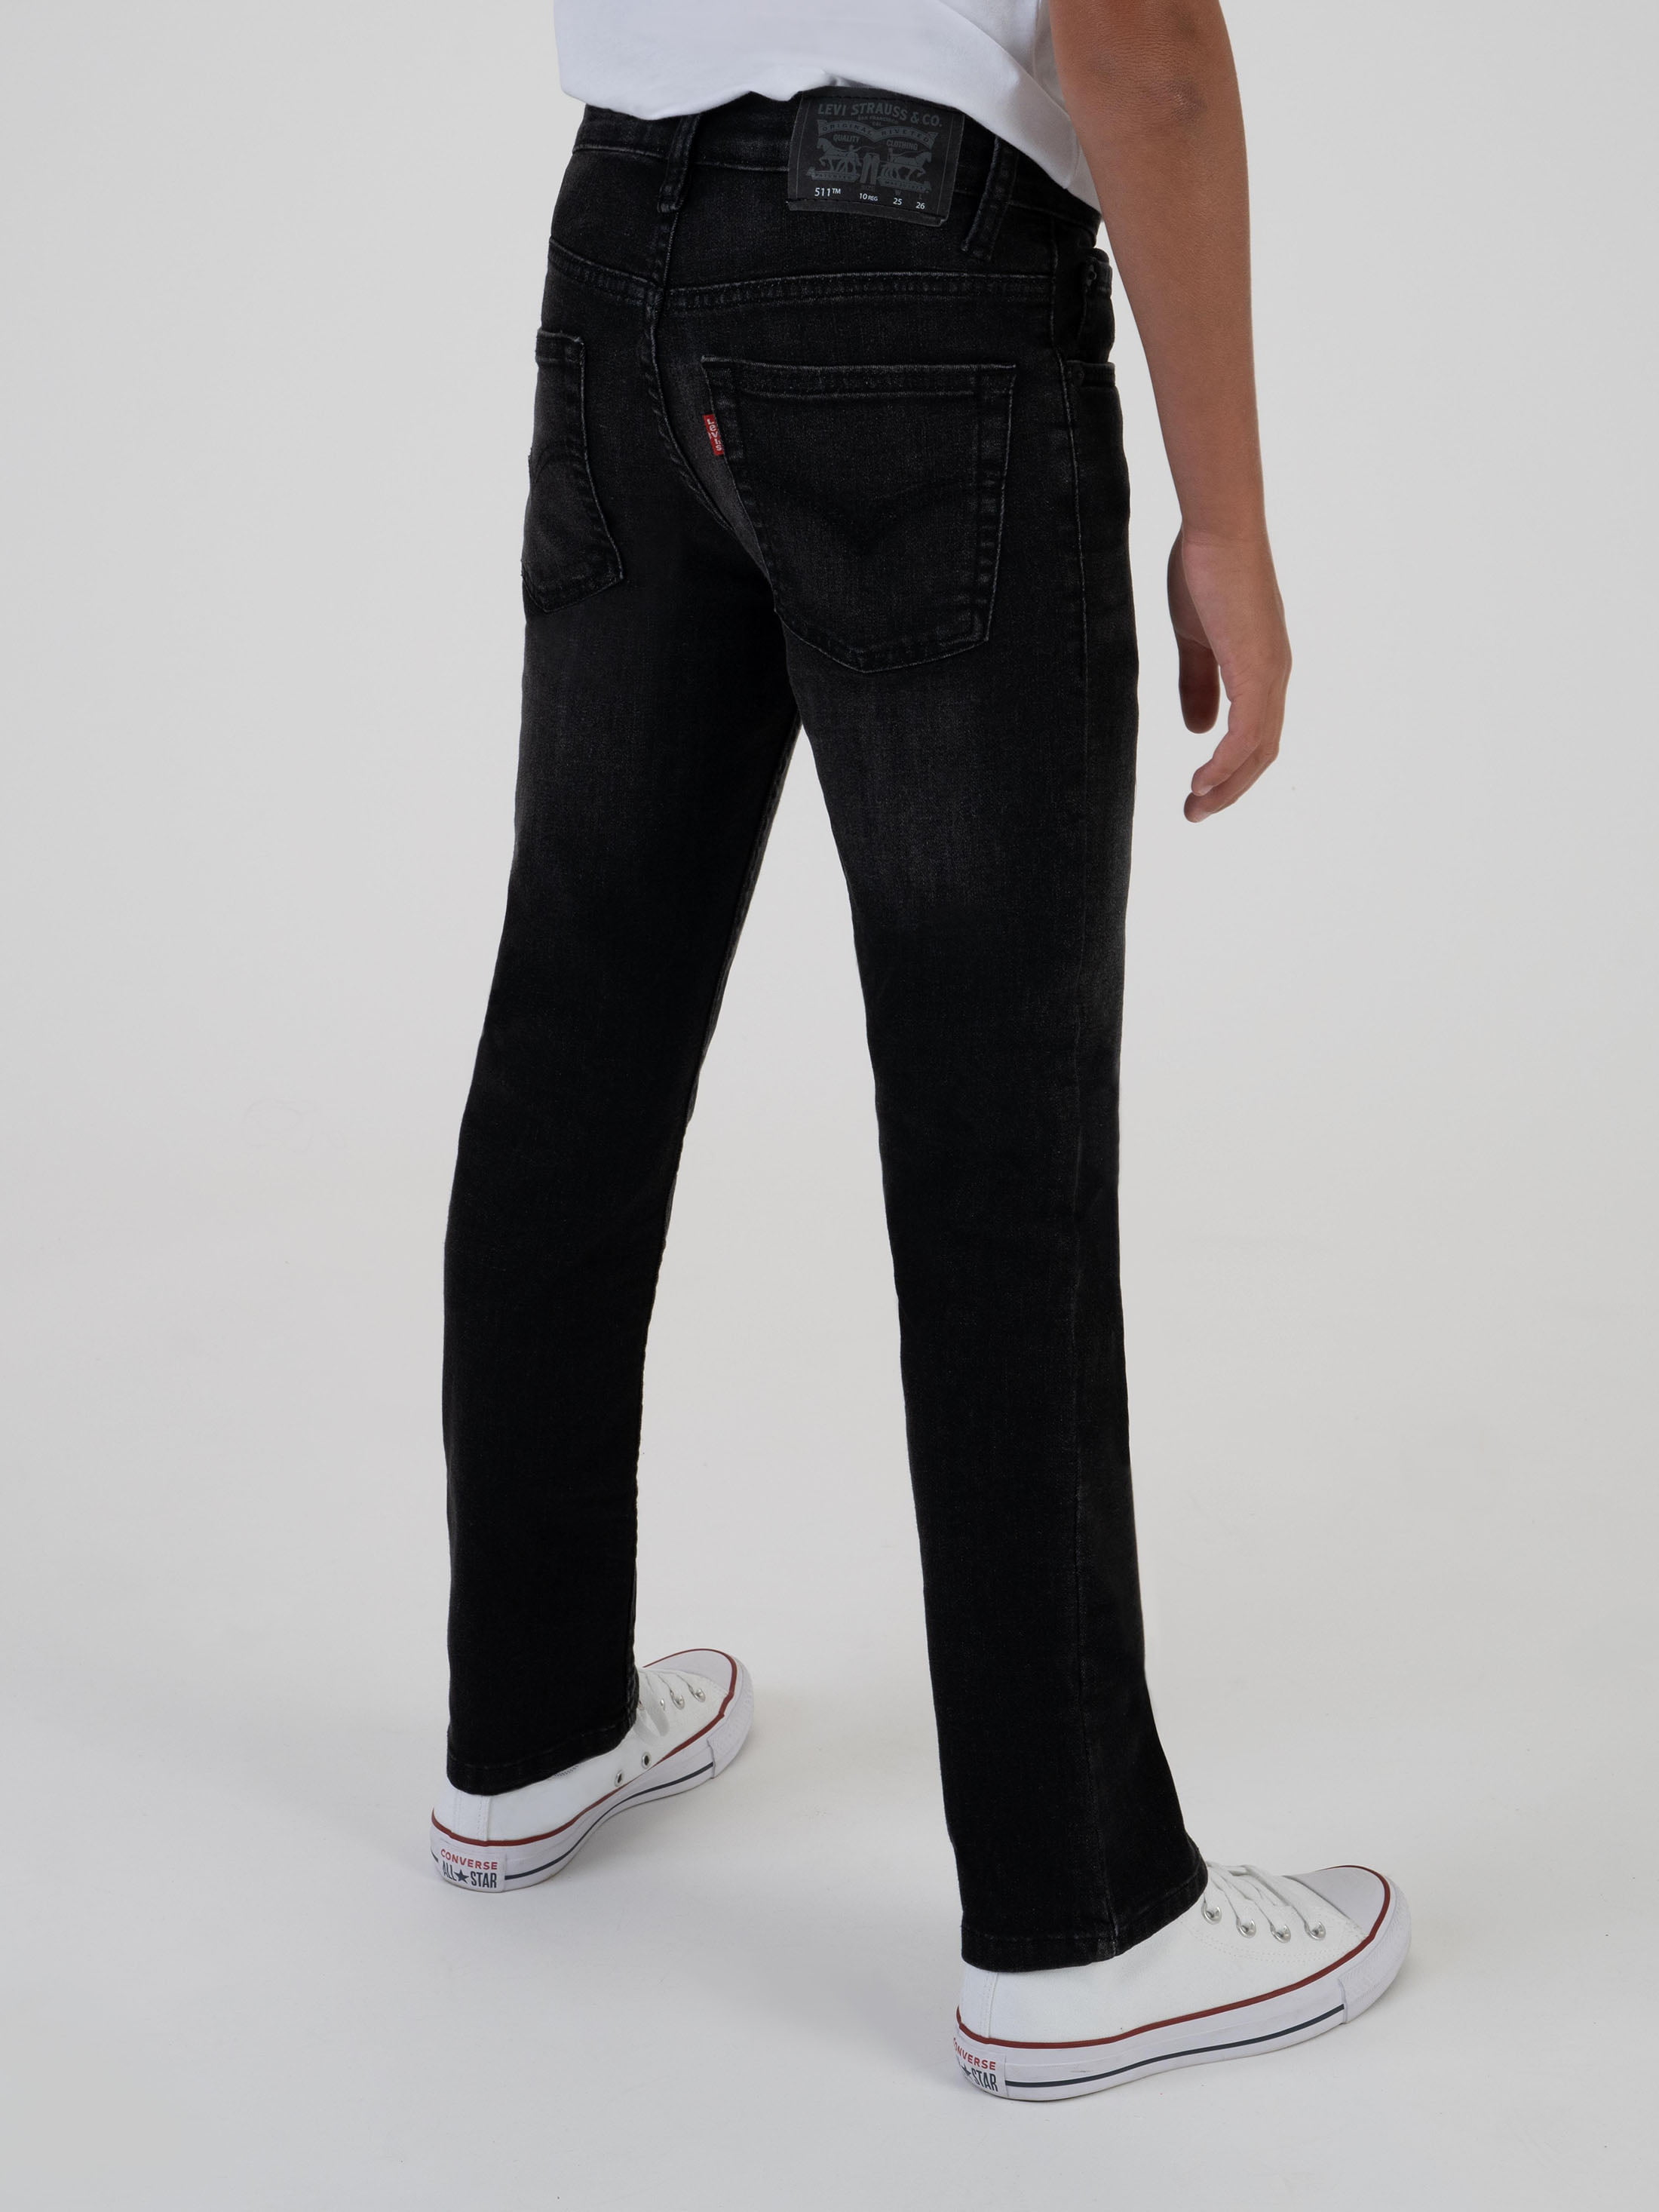 Levi's Boys' 511 Fit Jeans, Sizes 4-20 - Walmart.com